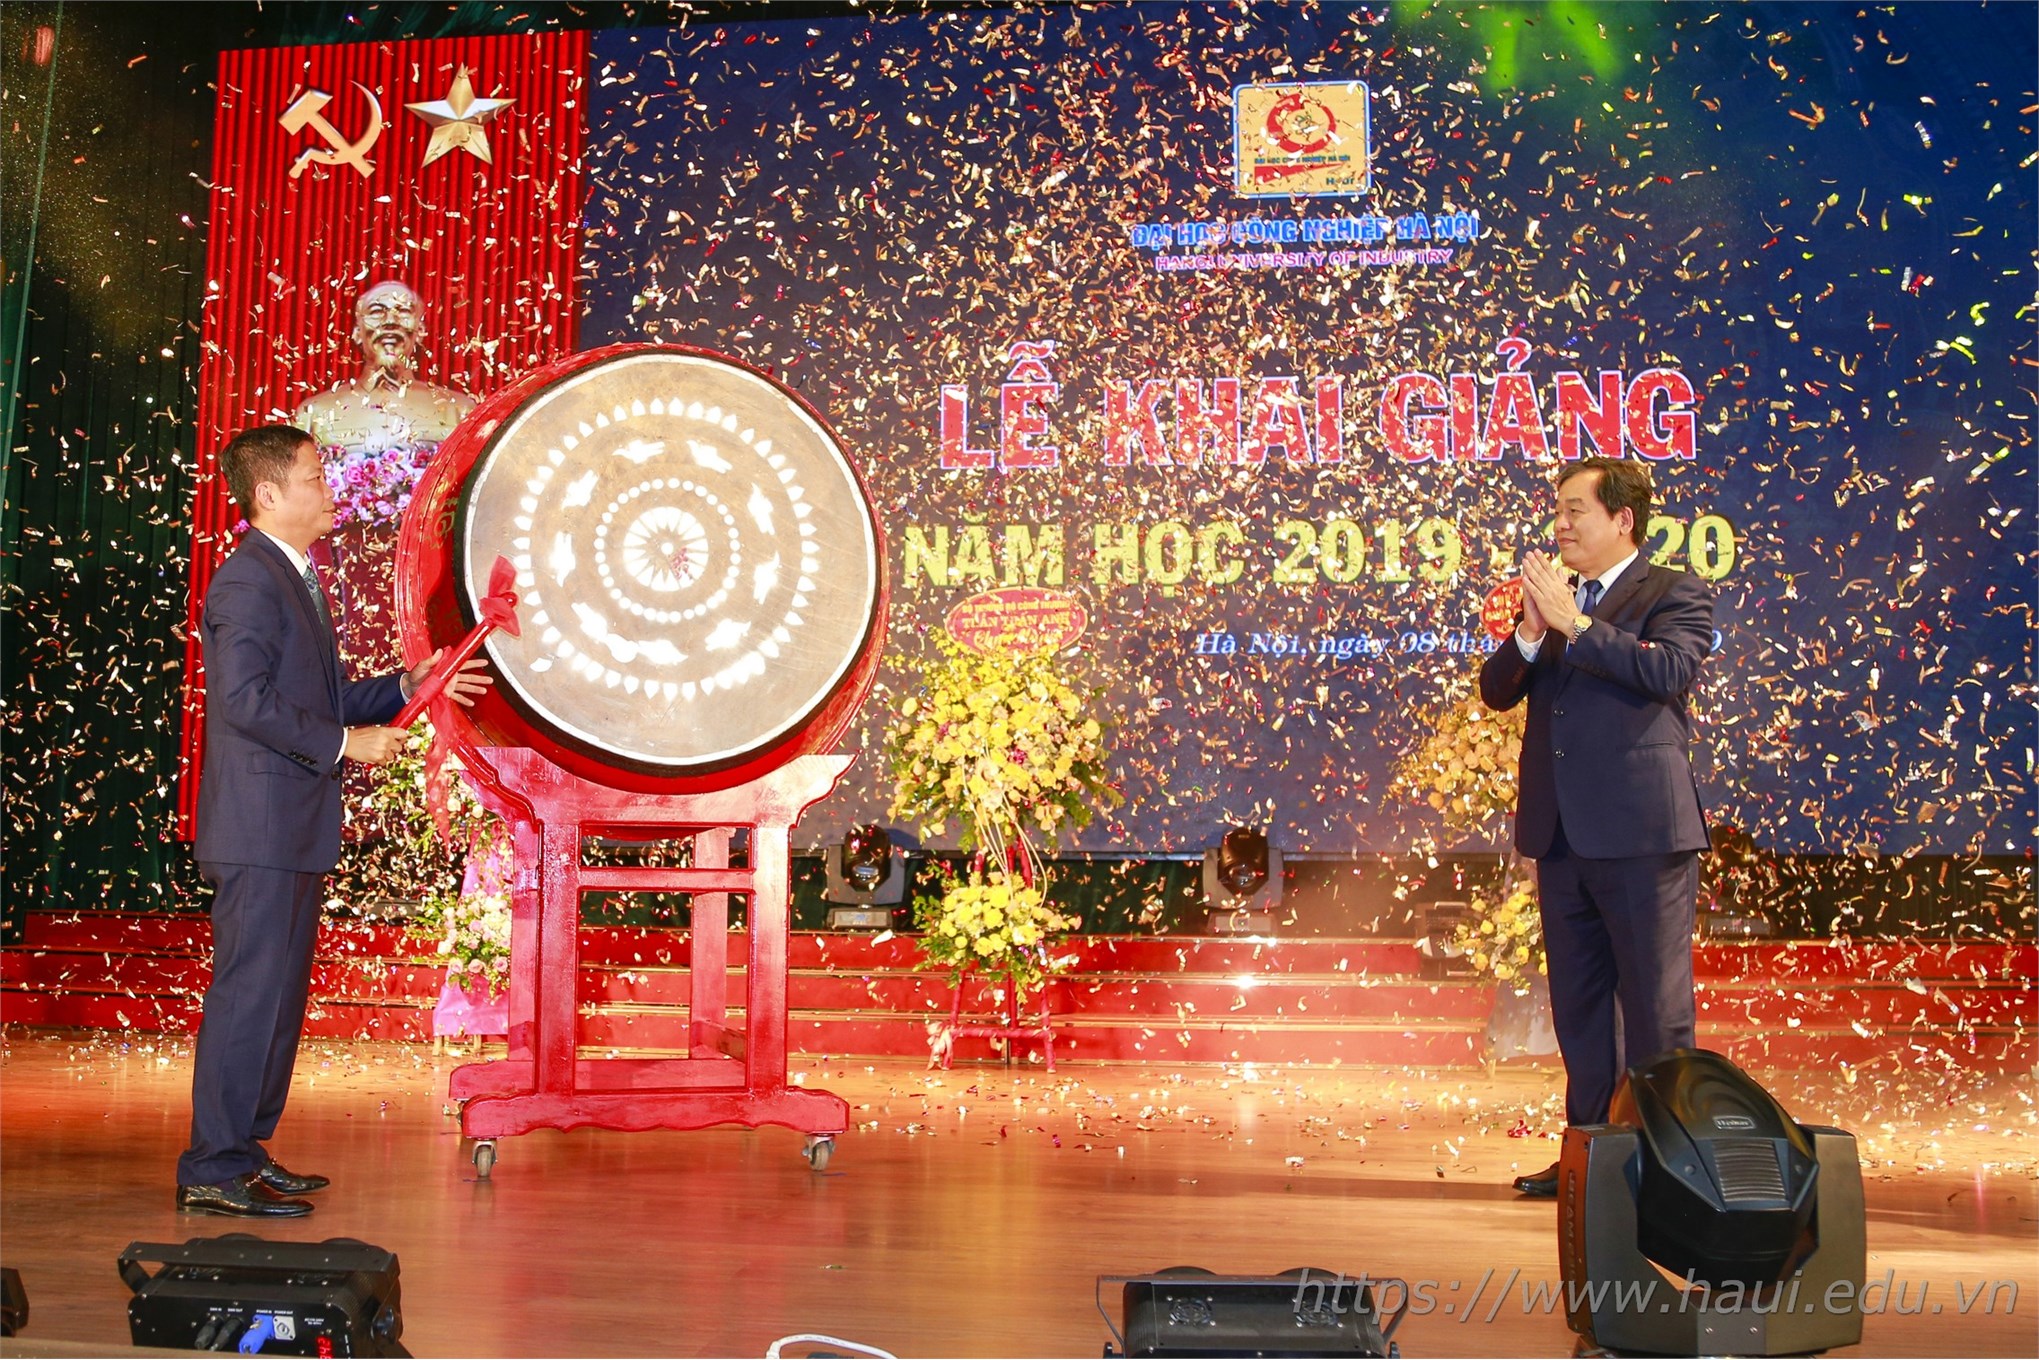 Đại học Công nghiệp Hà Nội tưng bừng khai giảng năm học 2019 - 2020